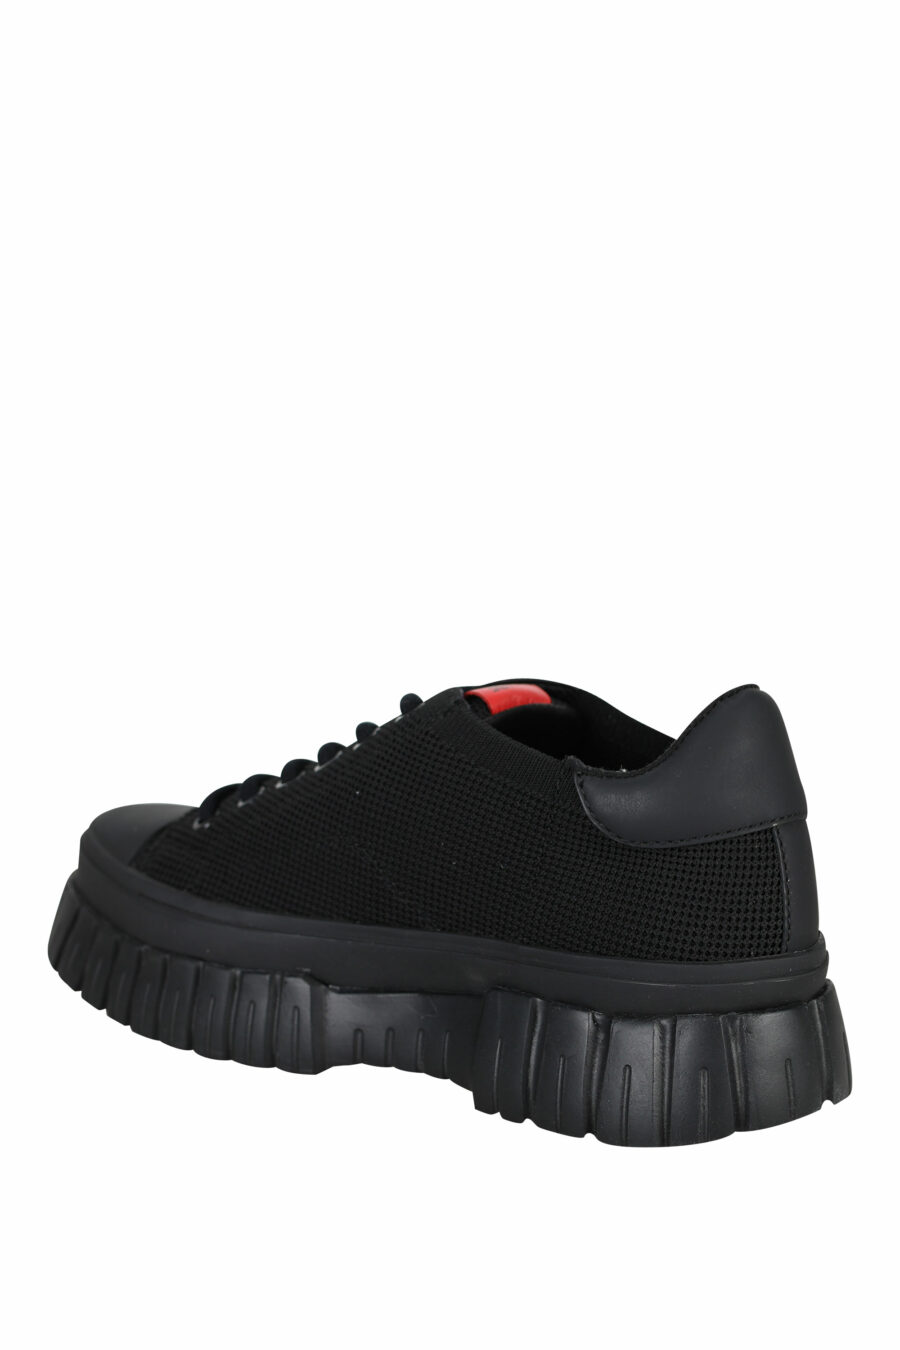 Zapatillas negras mix con logo - 8054653167971 3